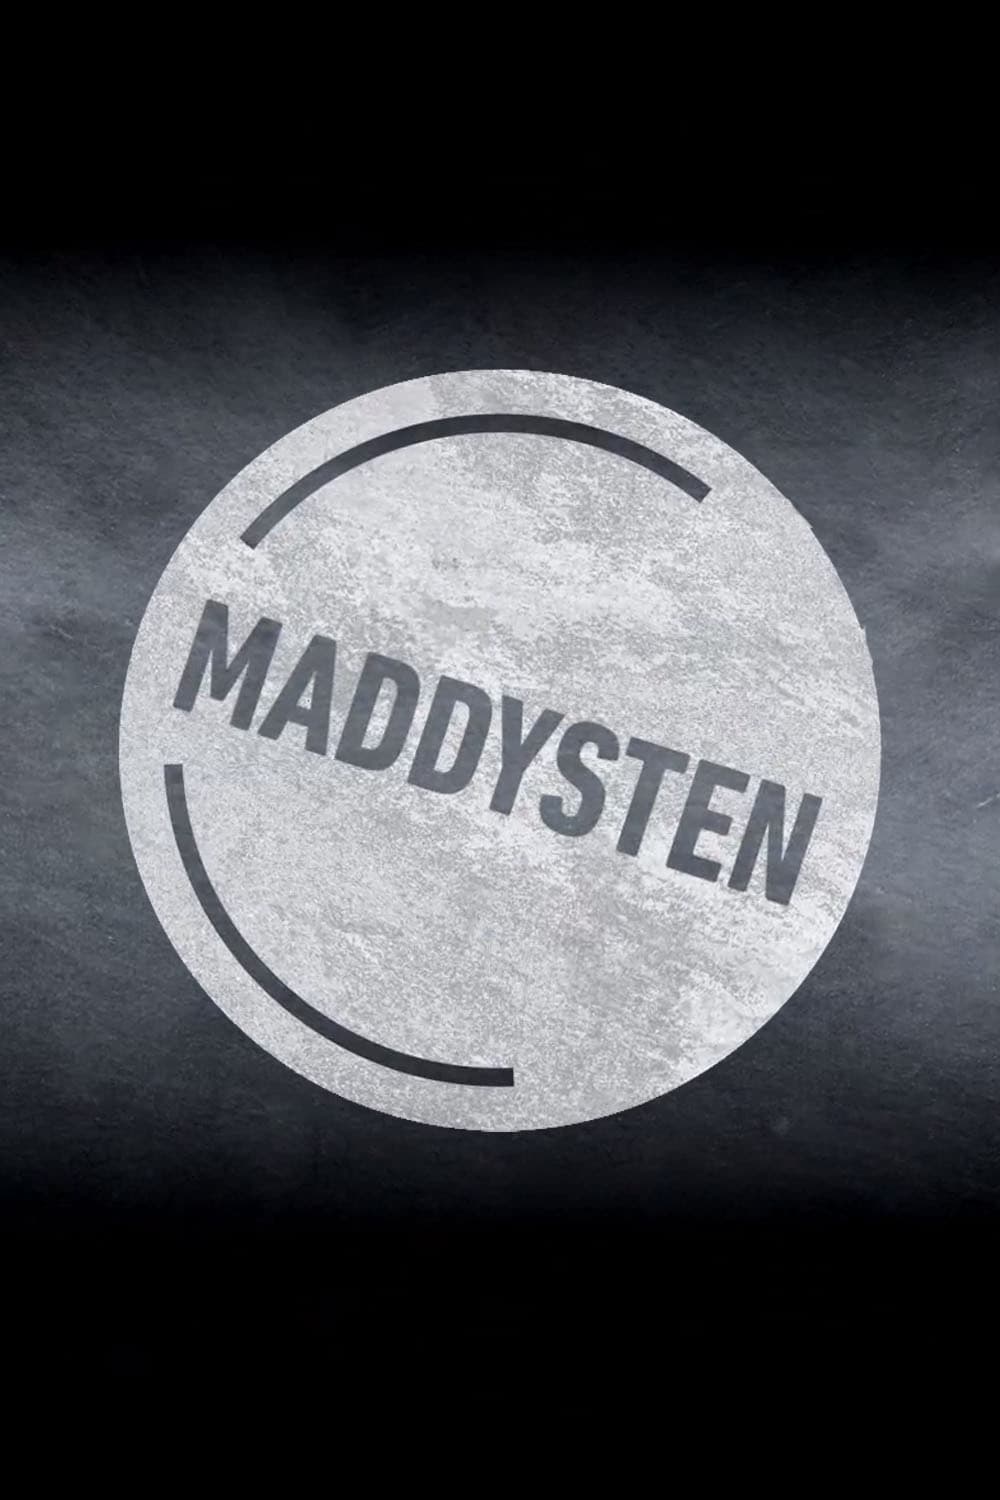 Maddysten